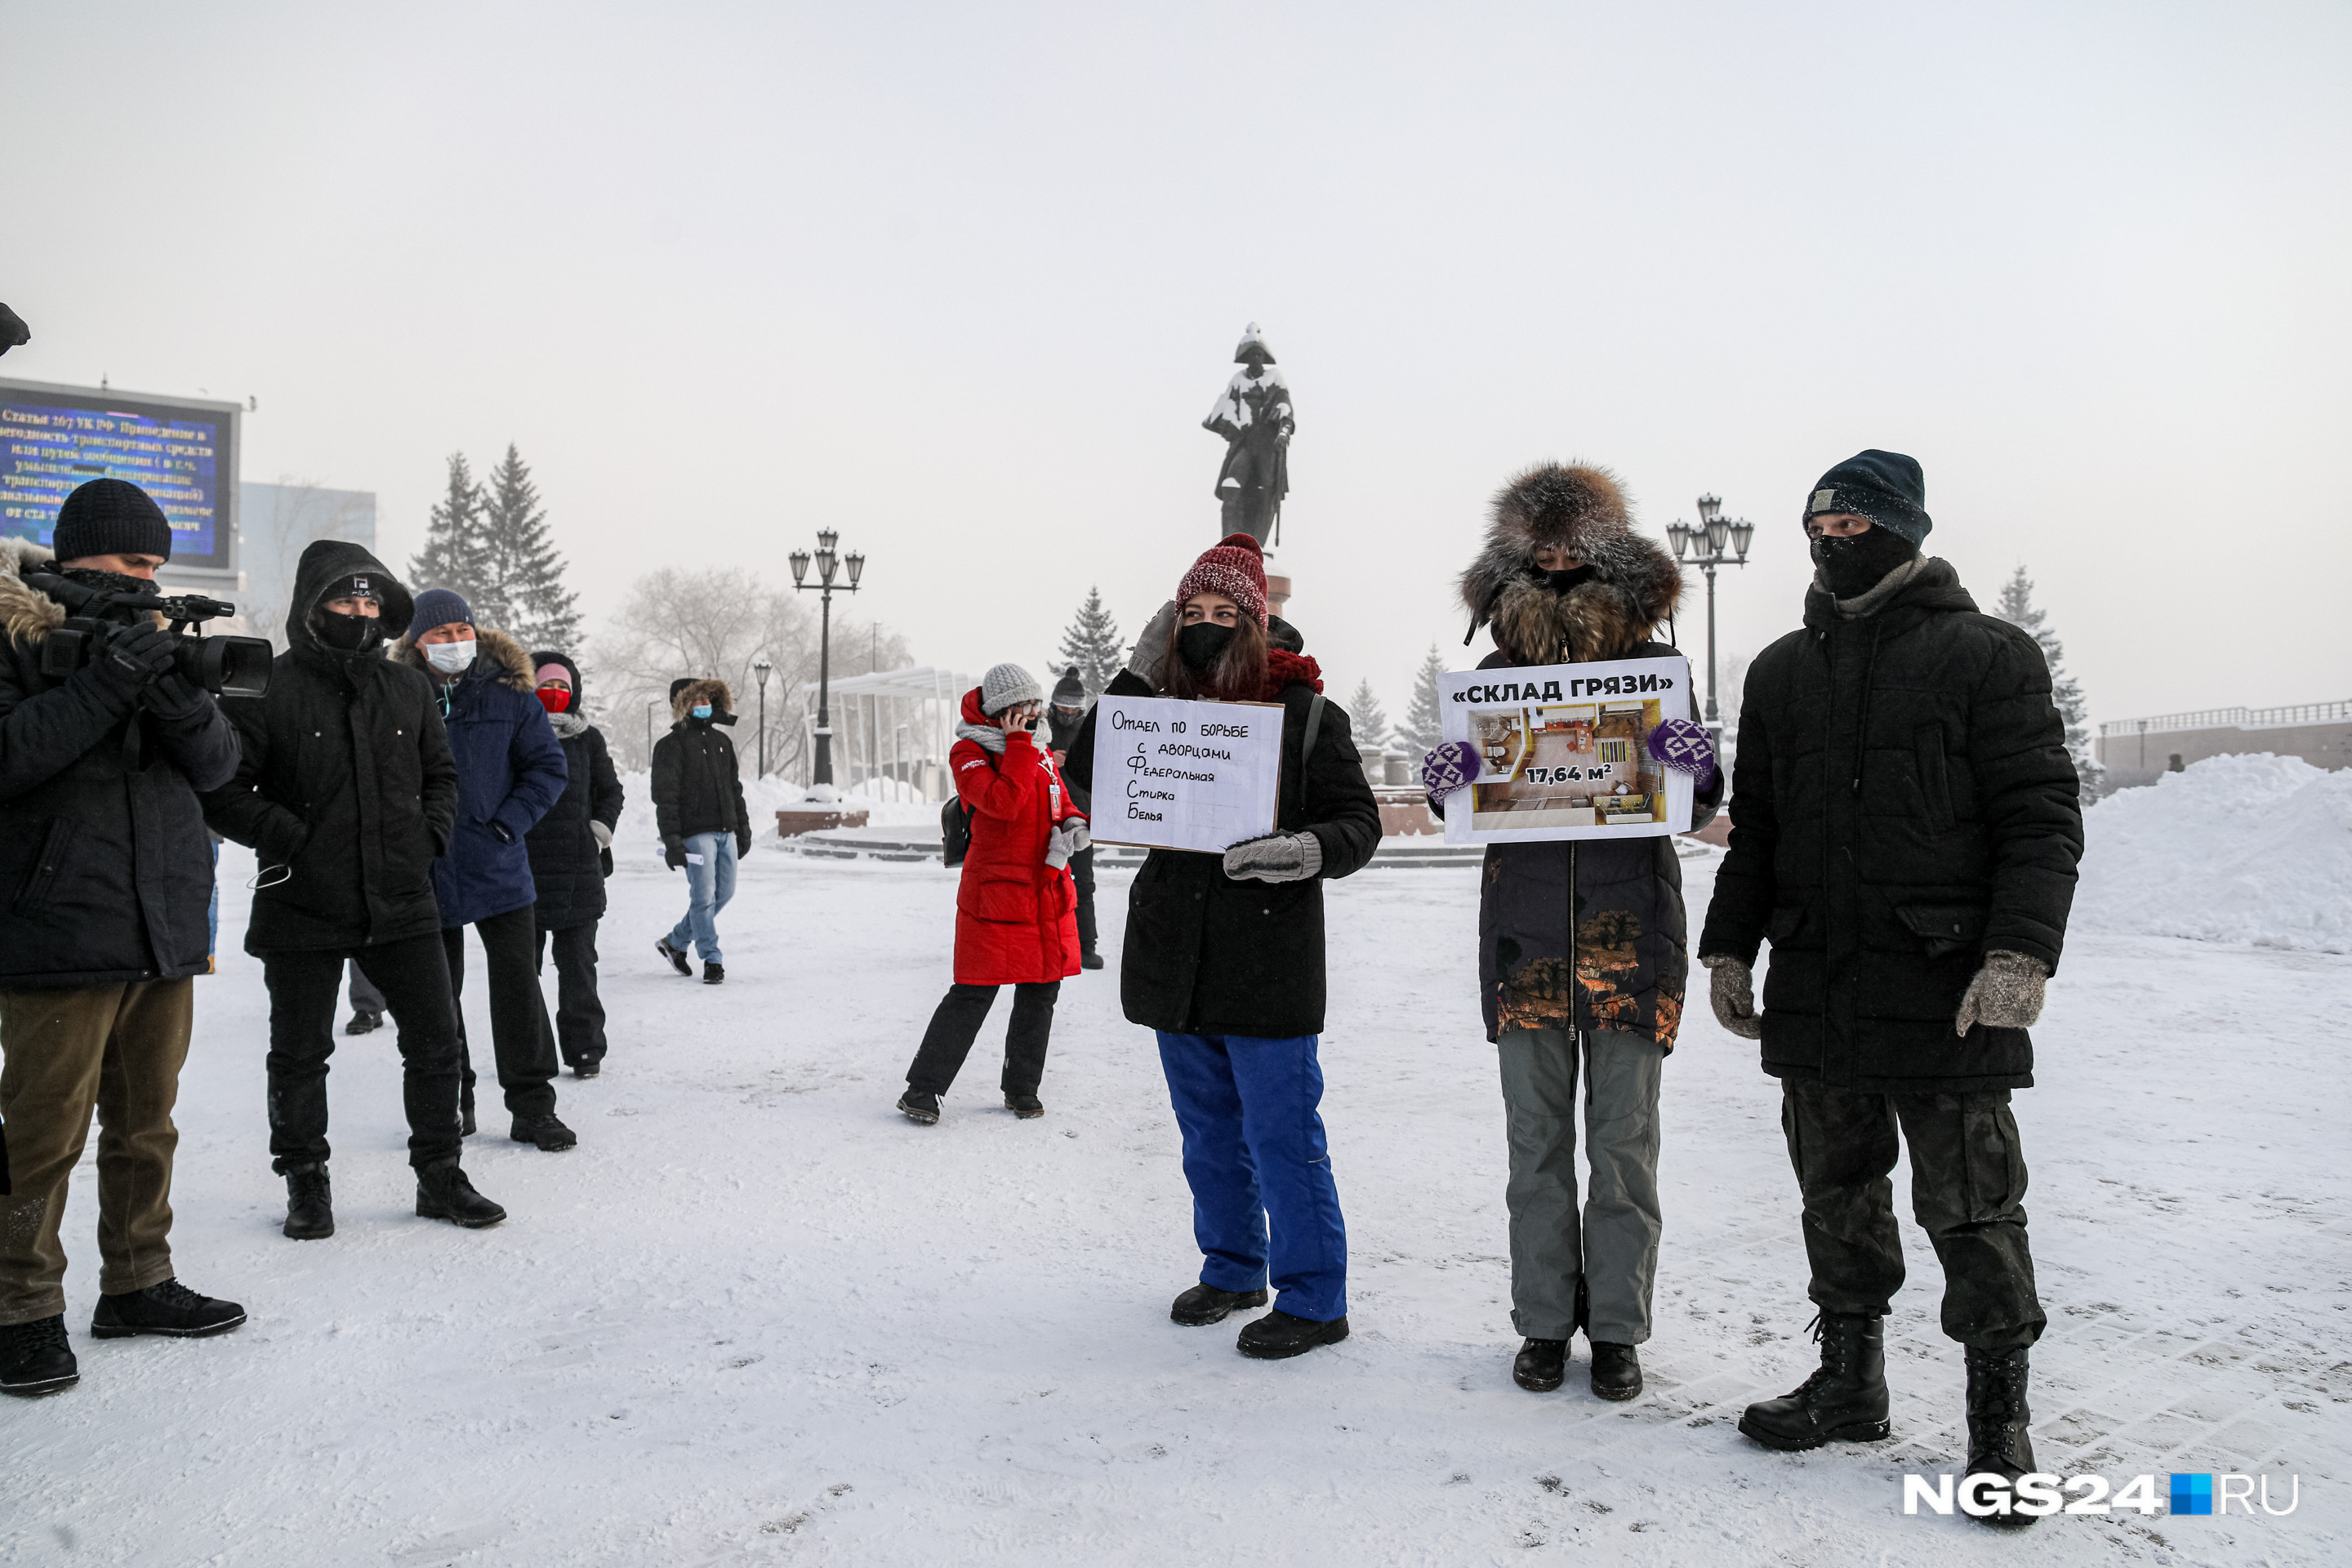 Люди пришли с плакатами, несмотря на мороз -35 градусов